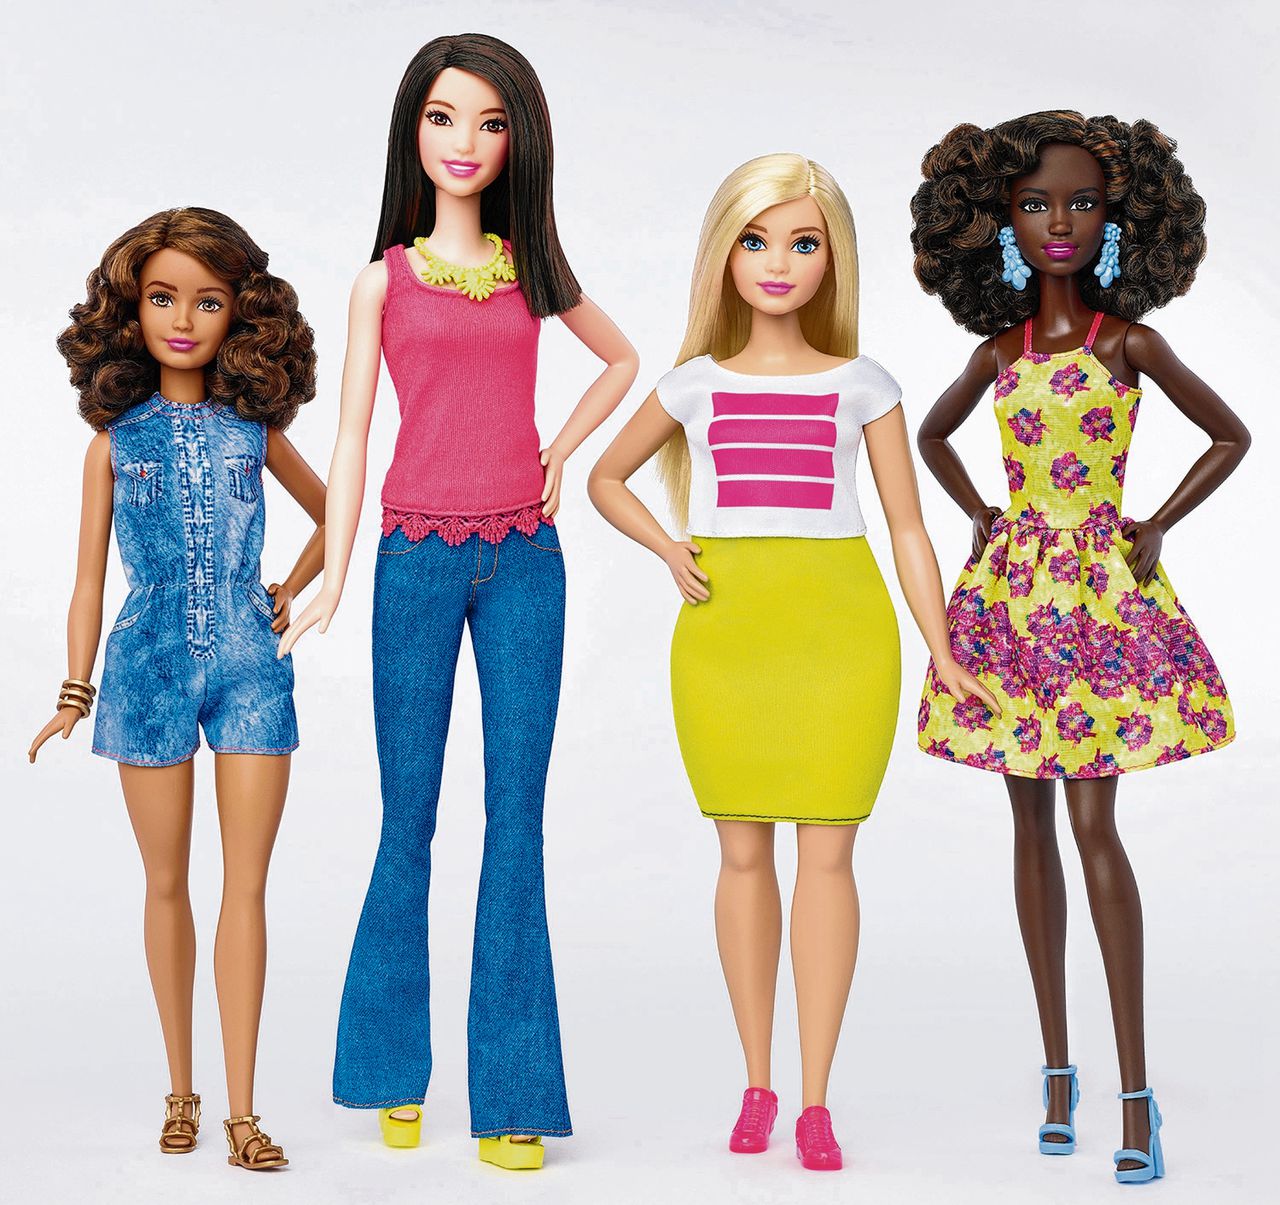 In dienst nemen bevind zich Afkeer Op haar 57ste krijgt het omstreden rolmodel Barbie eindelijk rondingen - NRC